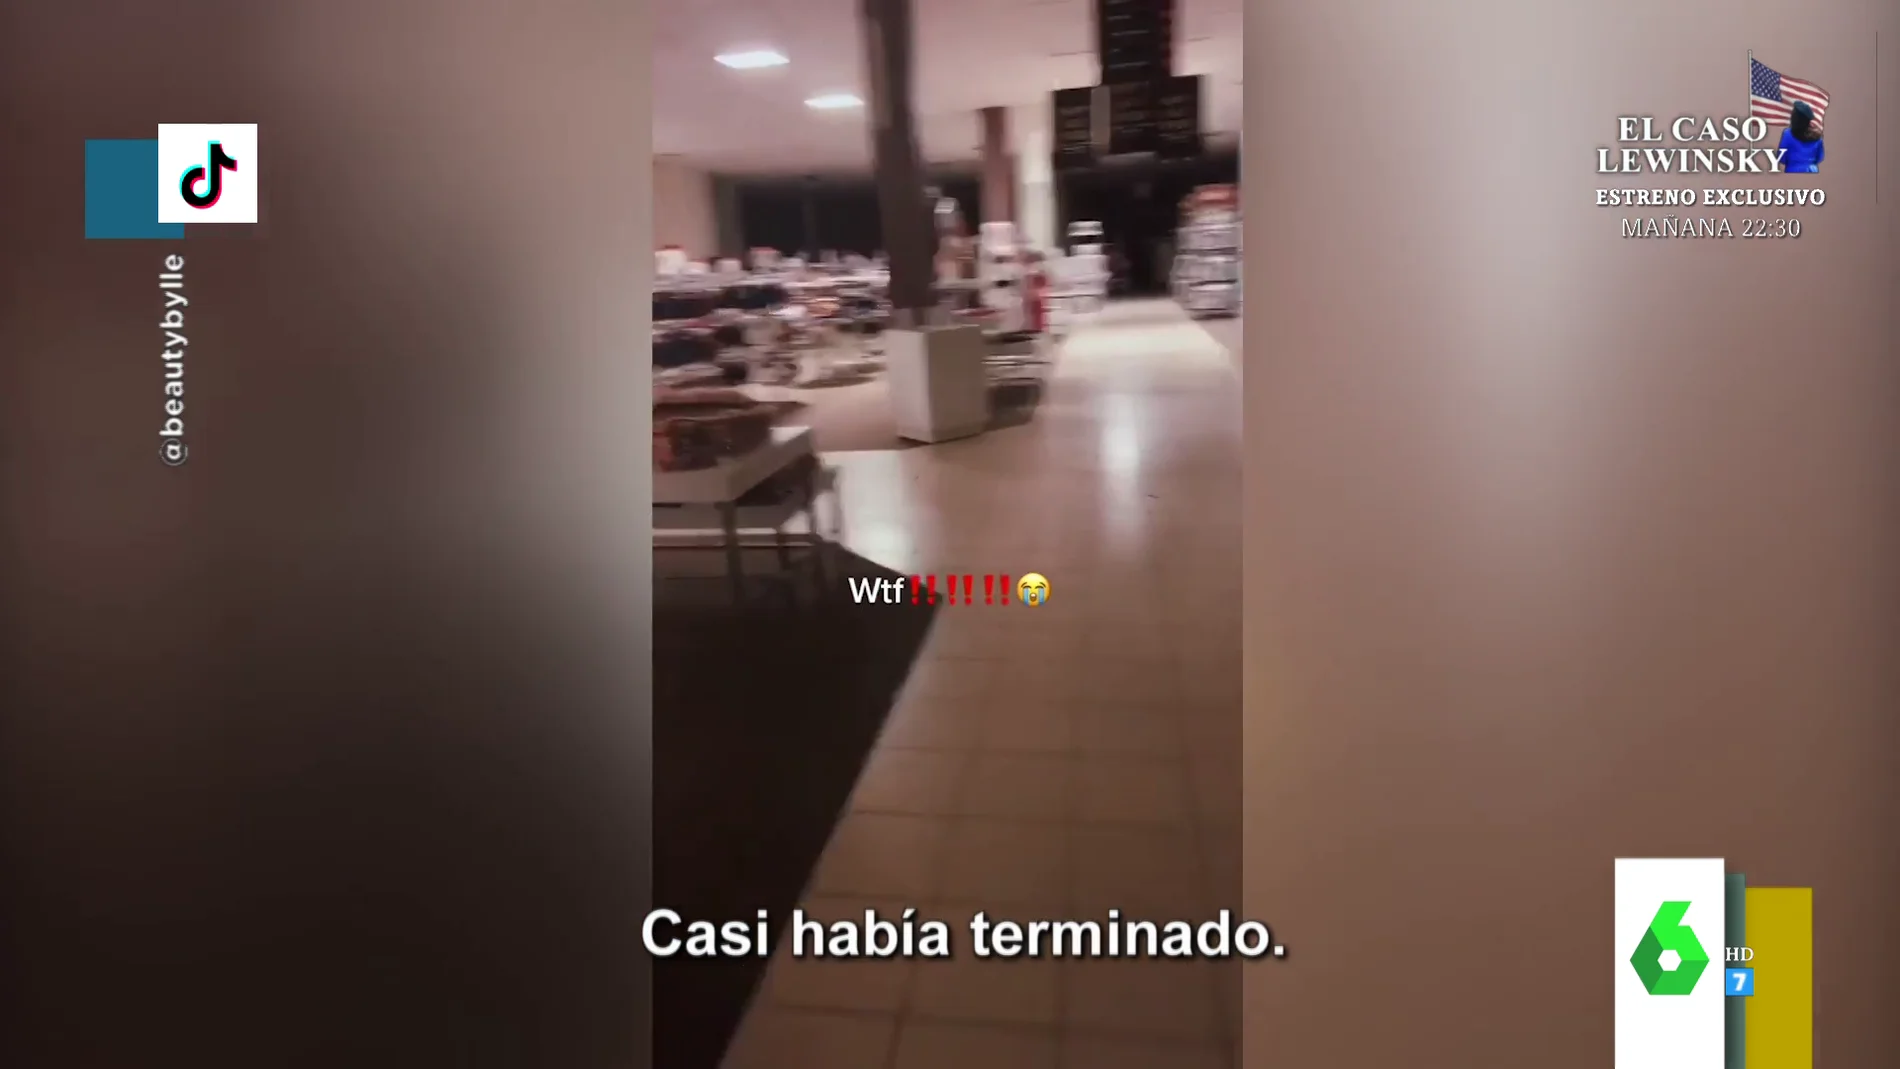 El agónico vídeo de una joven encerrada en un centro comercial de noche